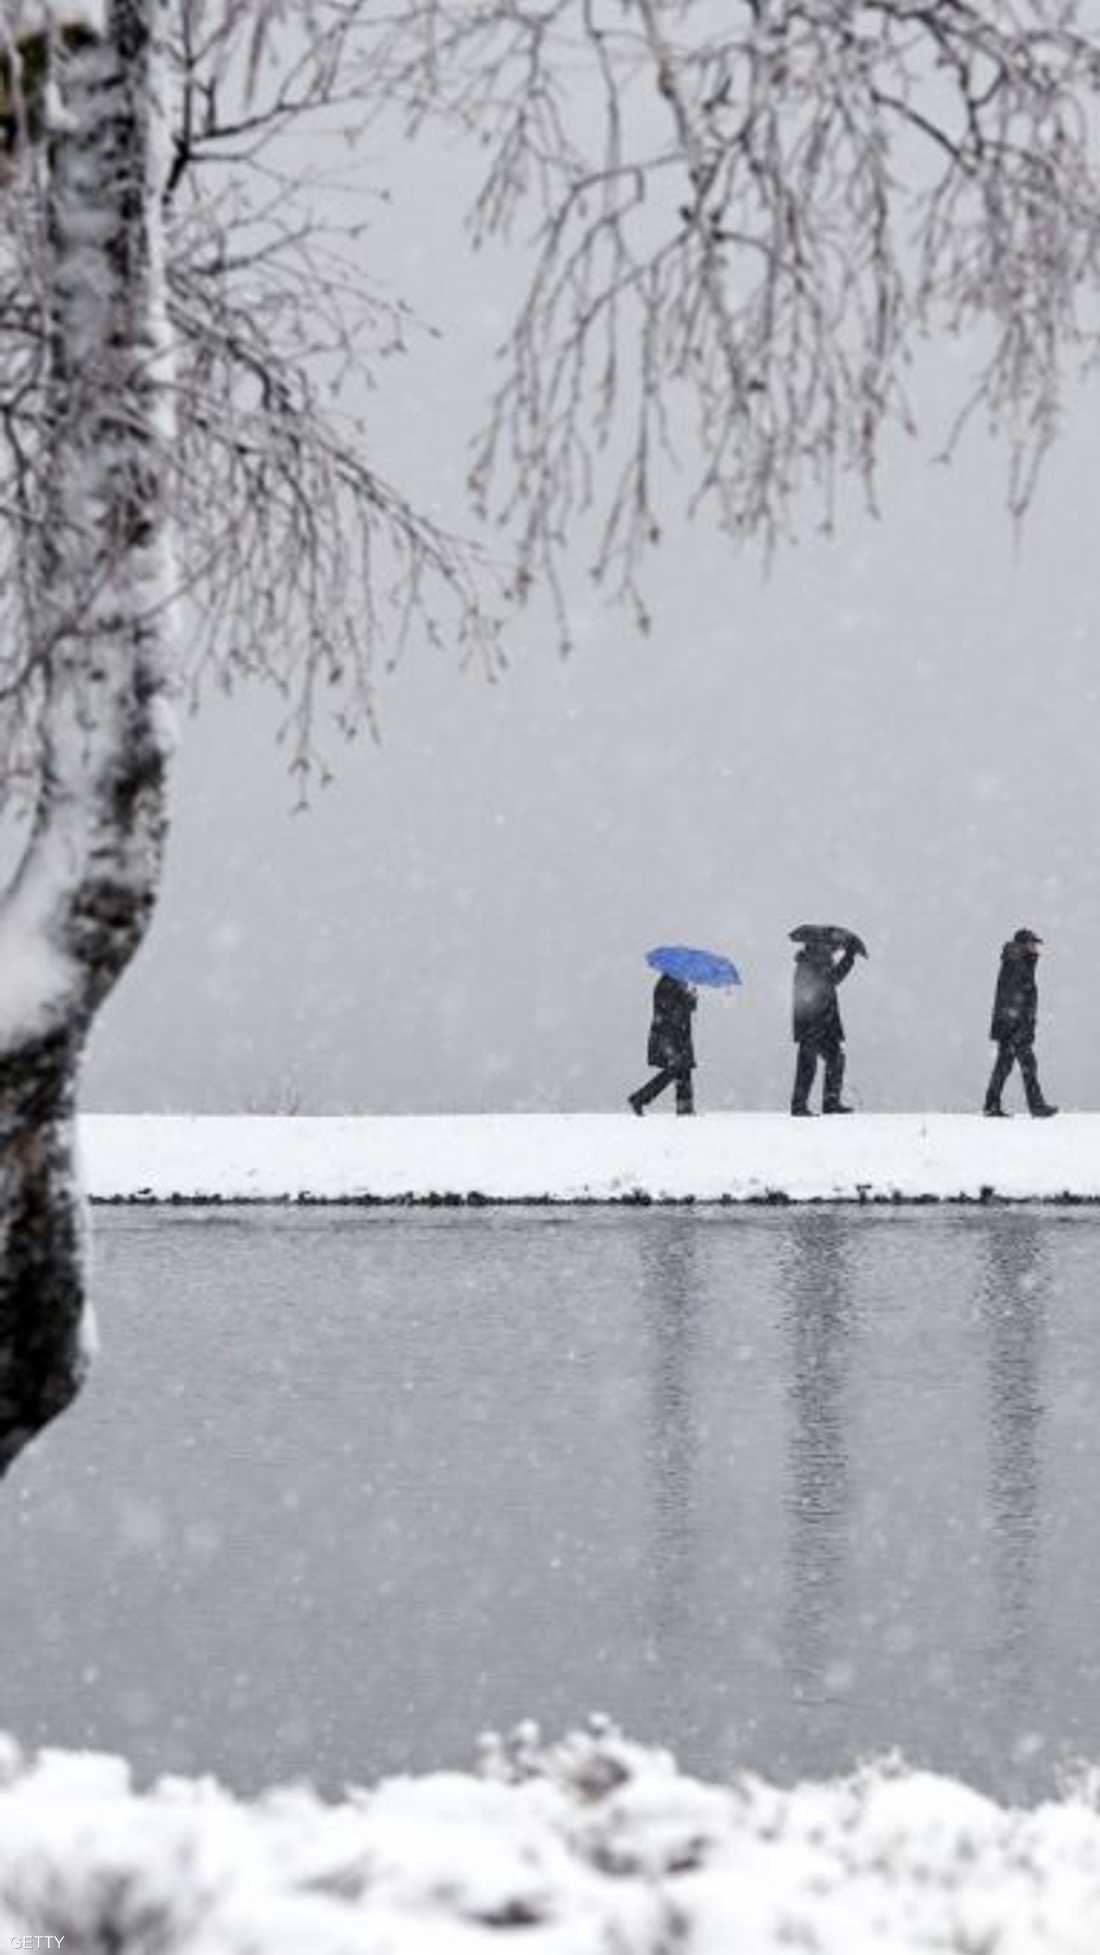 بعض السكان في ألمانيا يسيرون على ضفاف بحيرة وسط الثلوج التي كست كل شيء باللون الأبيض.